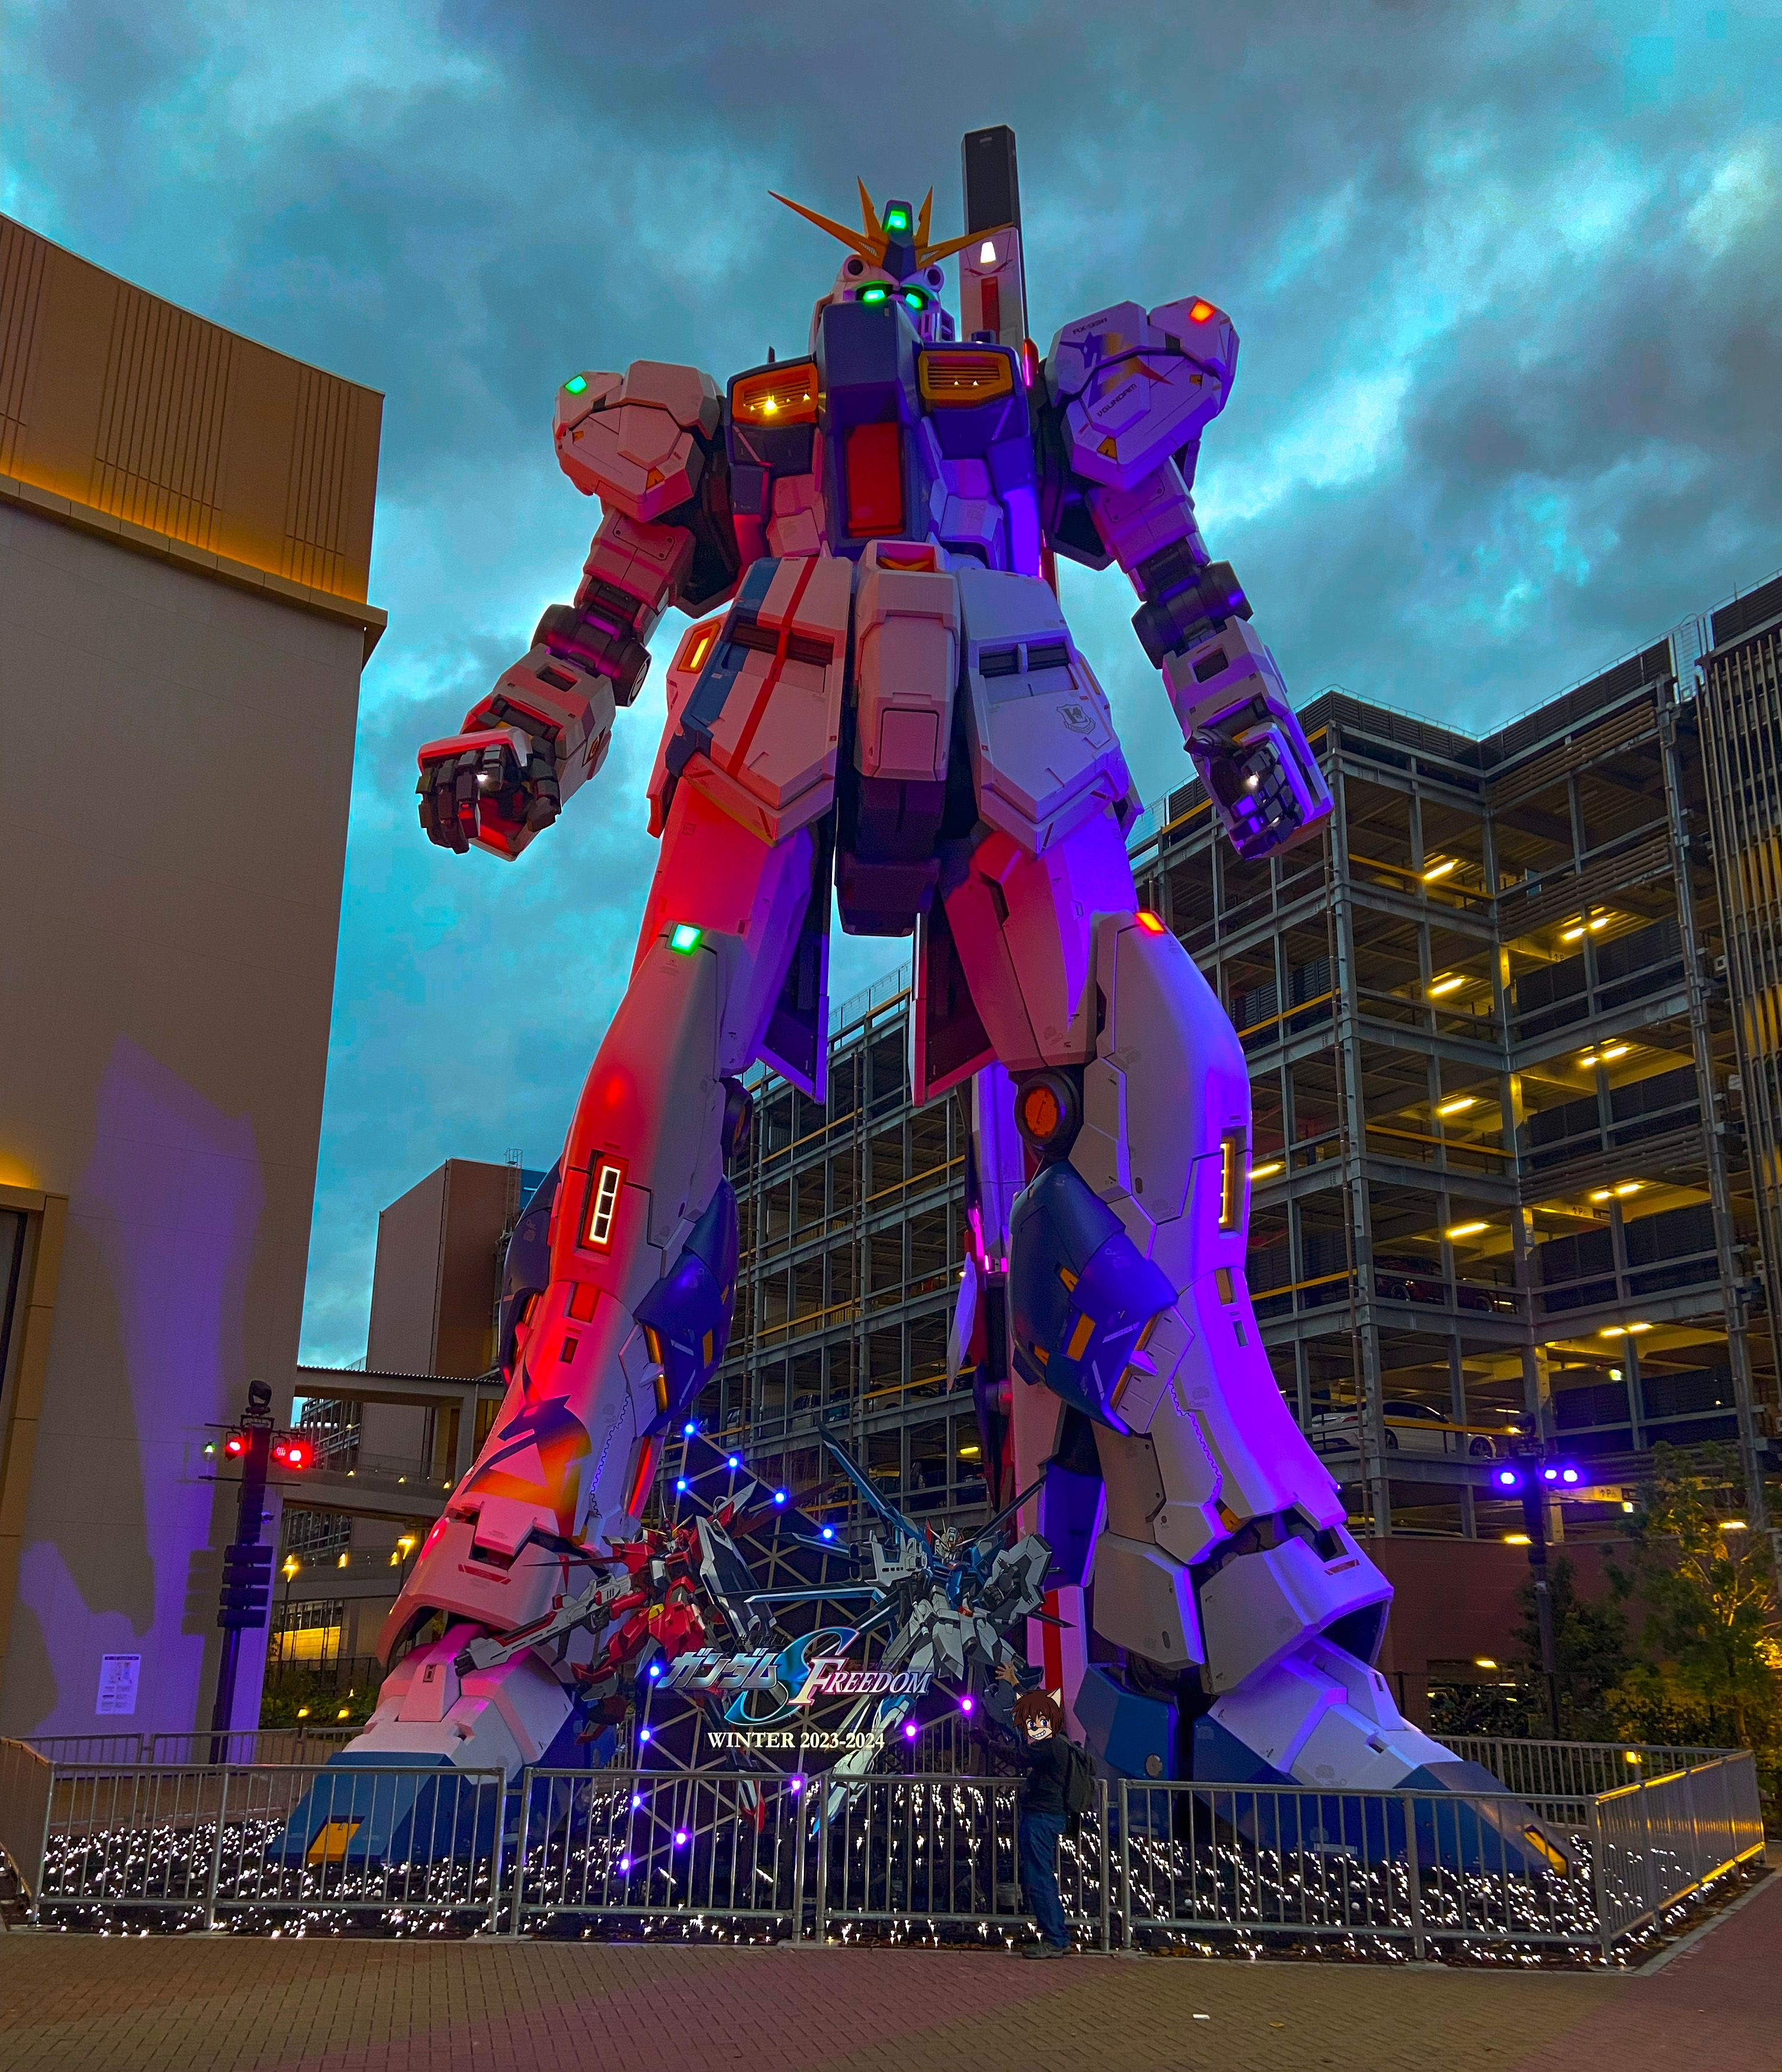 Fukuoka's Gundam Statue